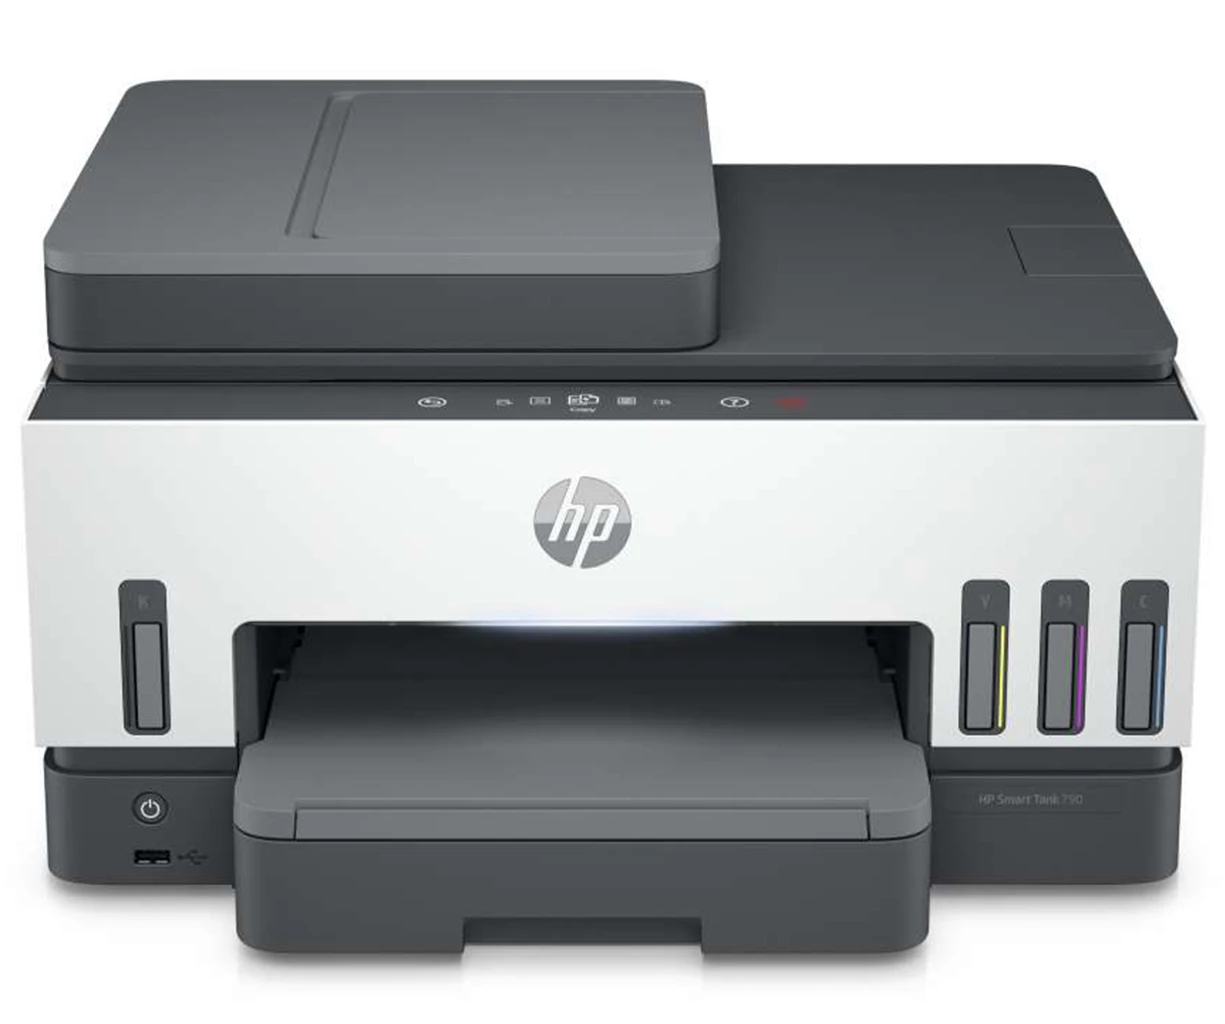 HP Smart Tank 790 4in1 Wireless Ink Tank Printer #4WF66A